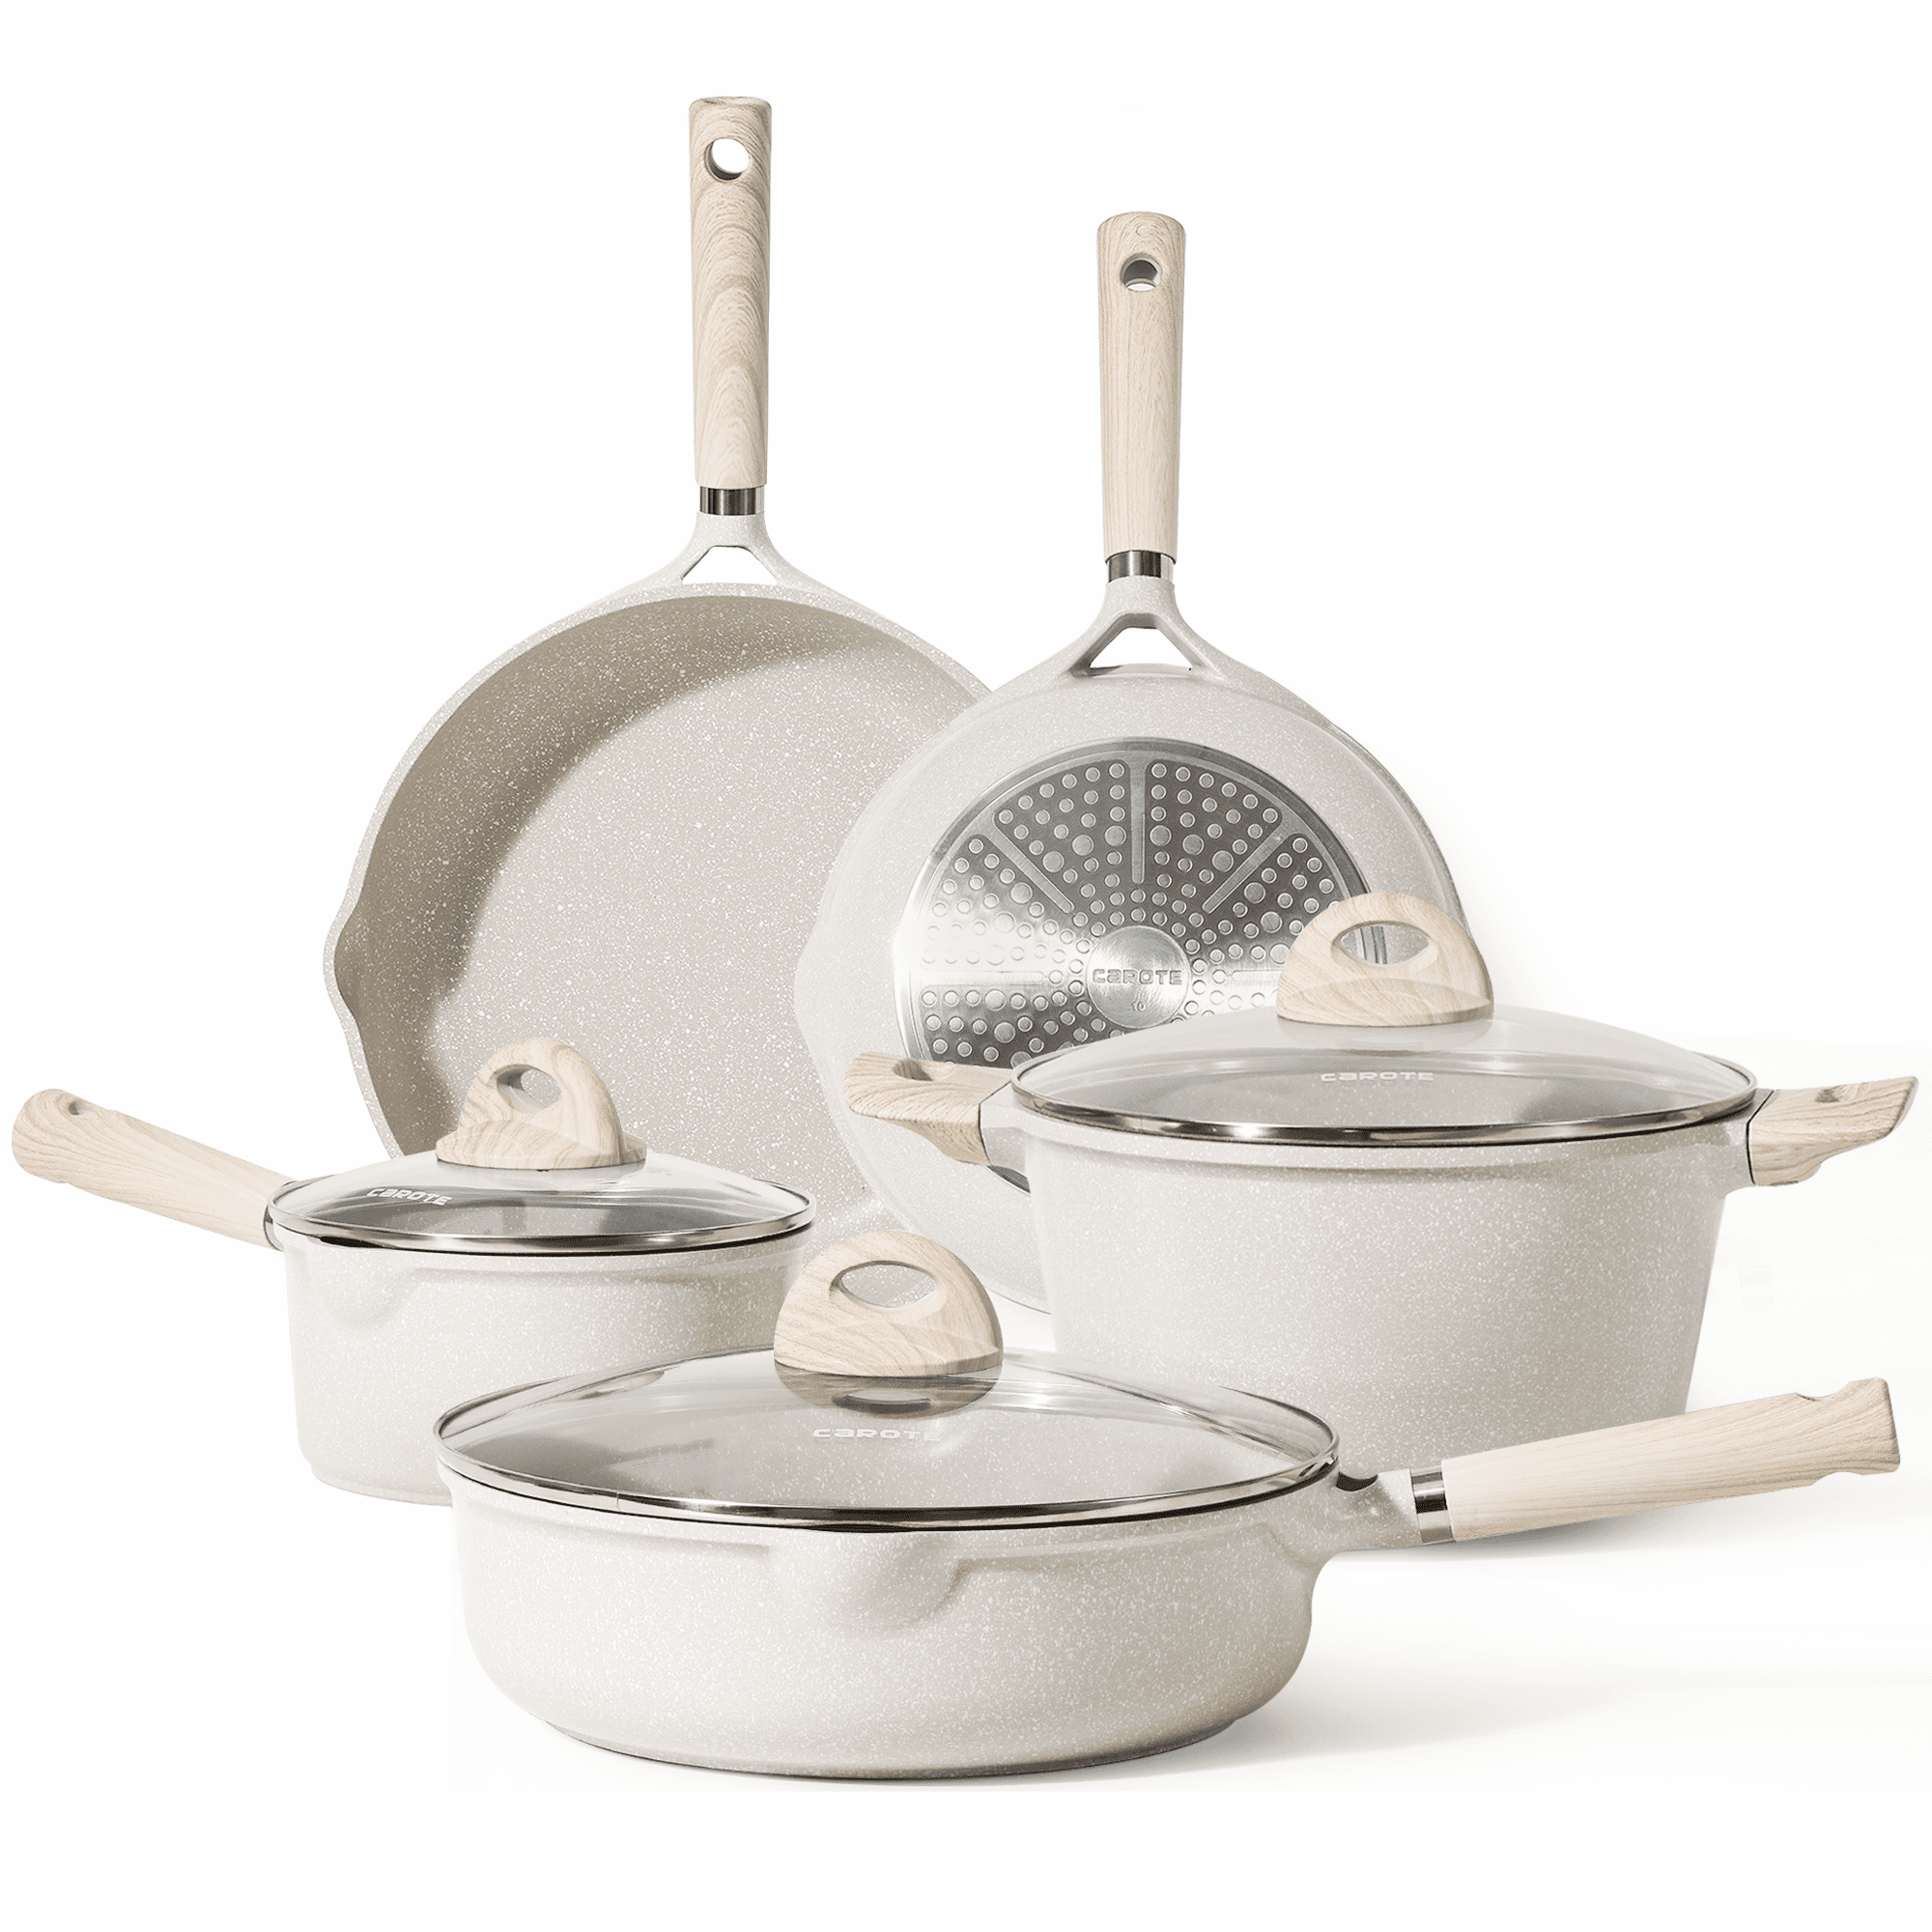 Carote Nonstick Pots and Pans Set, 8 Pcs Non Stick Cookware Set, Induction  Stone